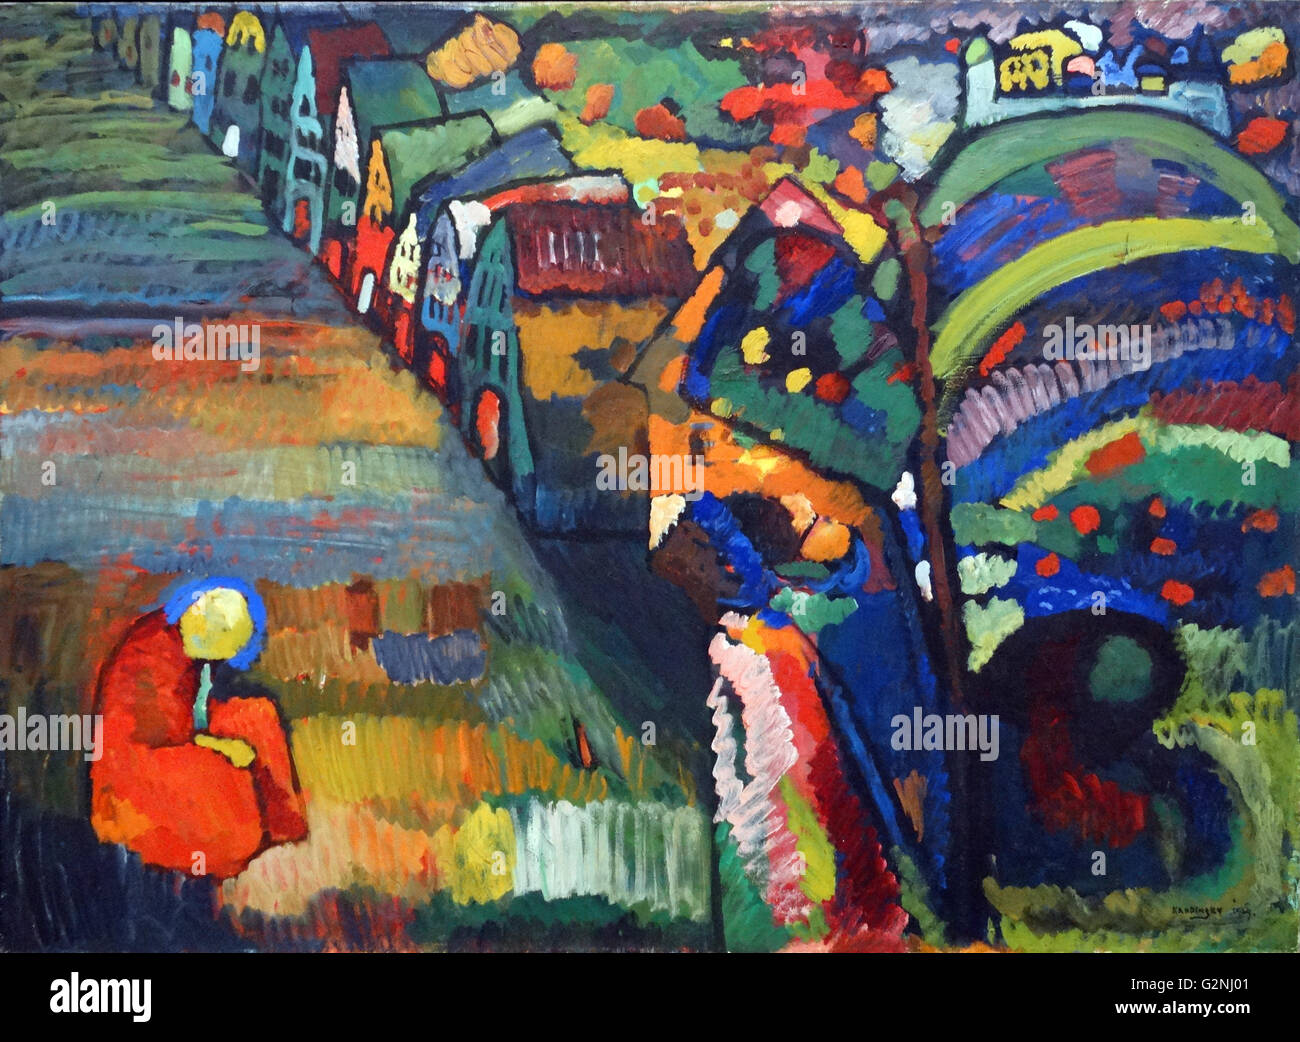 Malen mit Häuser (Öl auf Leinwand) von Wassily Kandinsky (1866-1944) einen einflussreichen russischen Maler und Kunsttheoretiker. Er ist mit der Malerei der ersten rein abstrakten Werke gutgeschrieben. Stockfoto